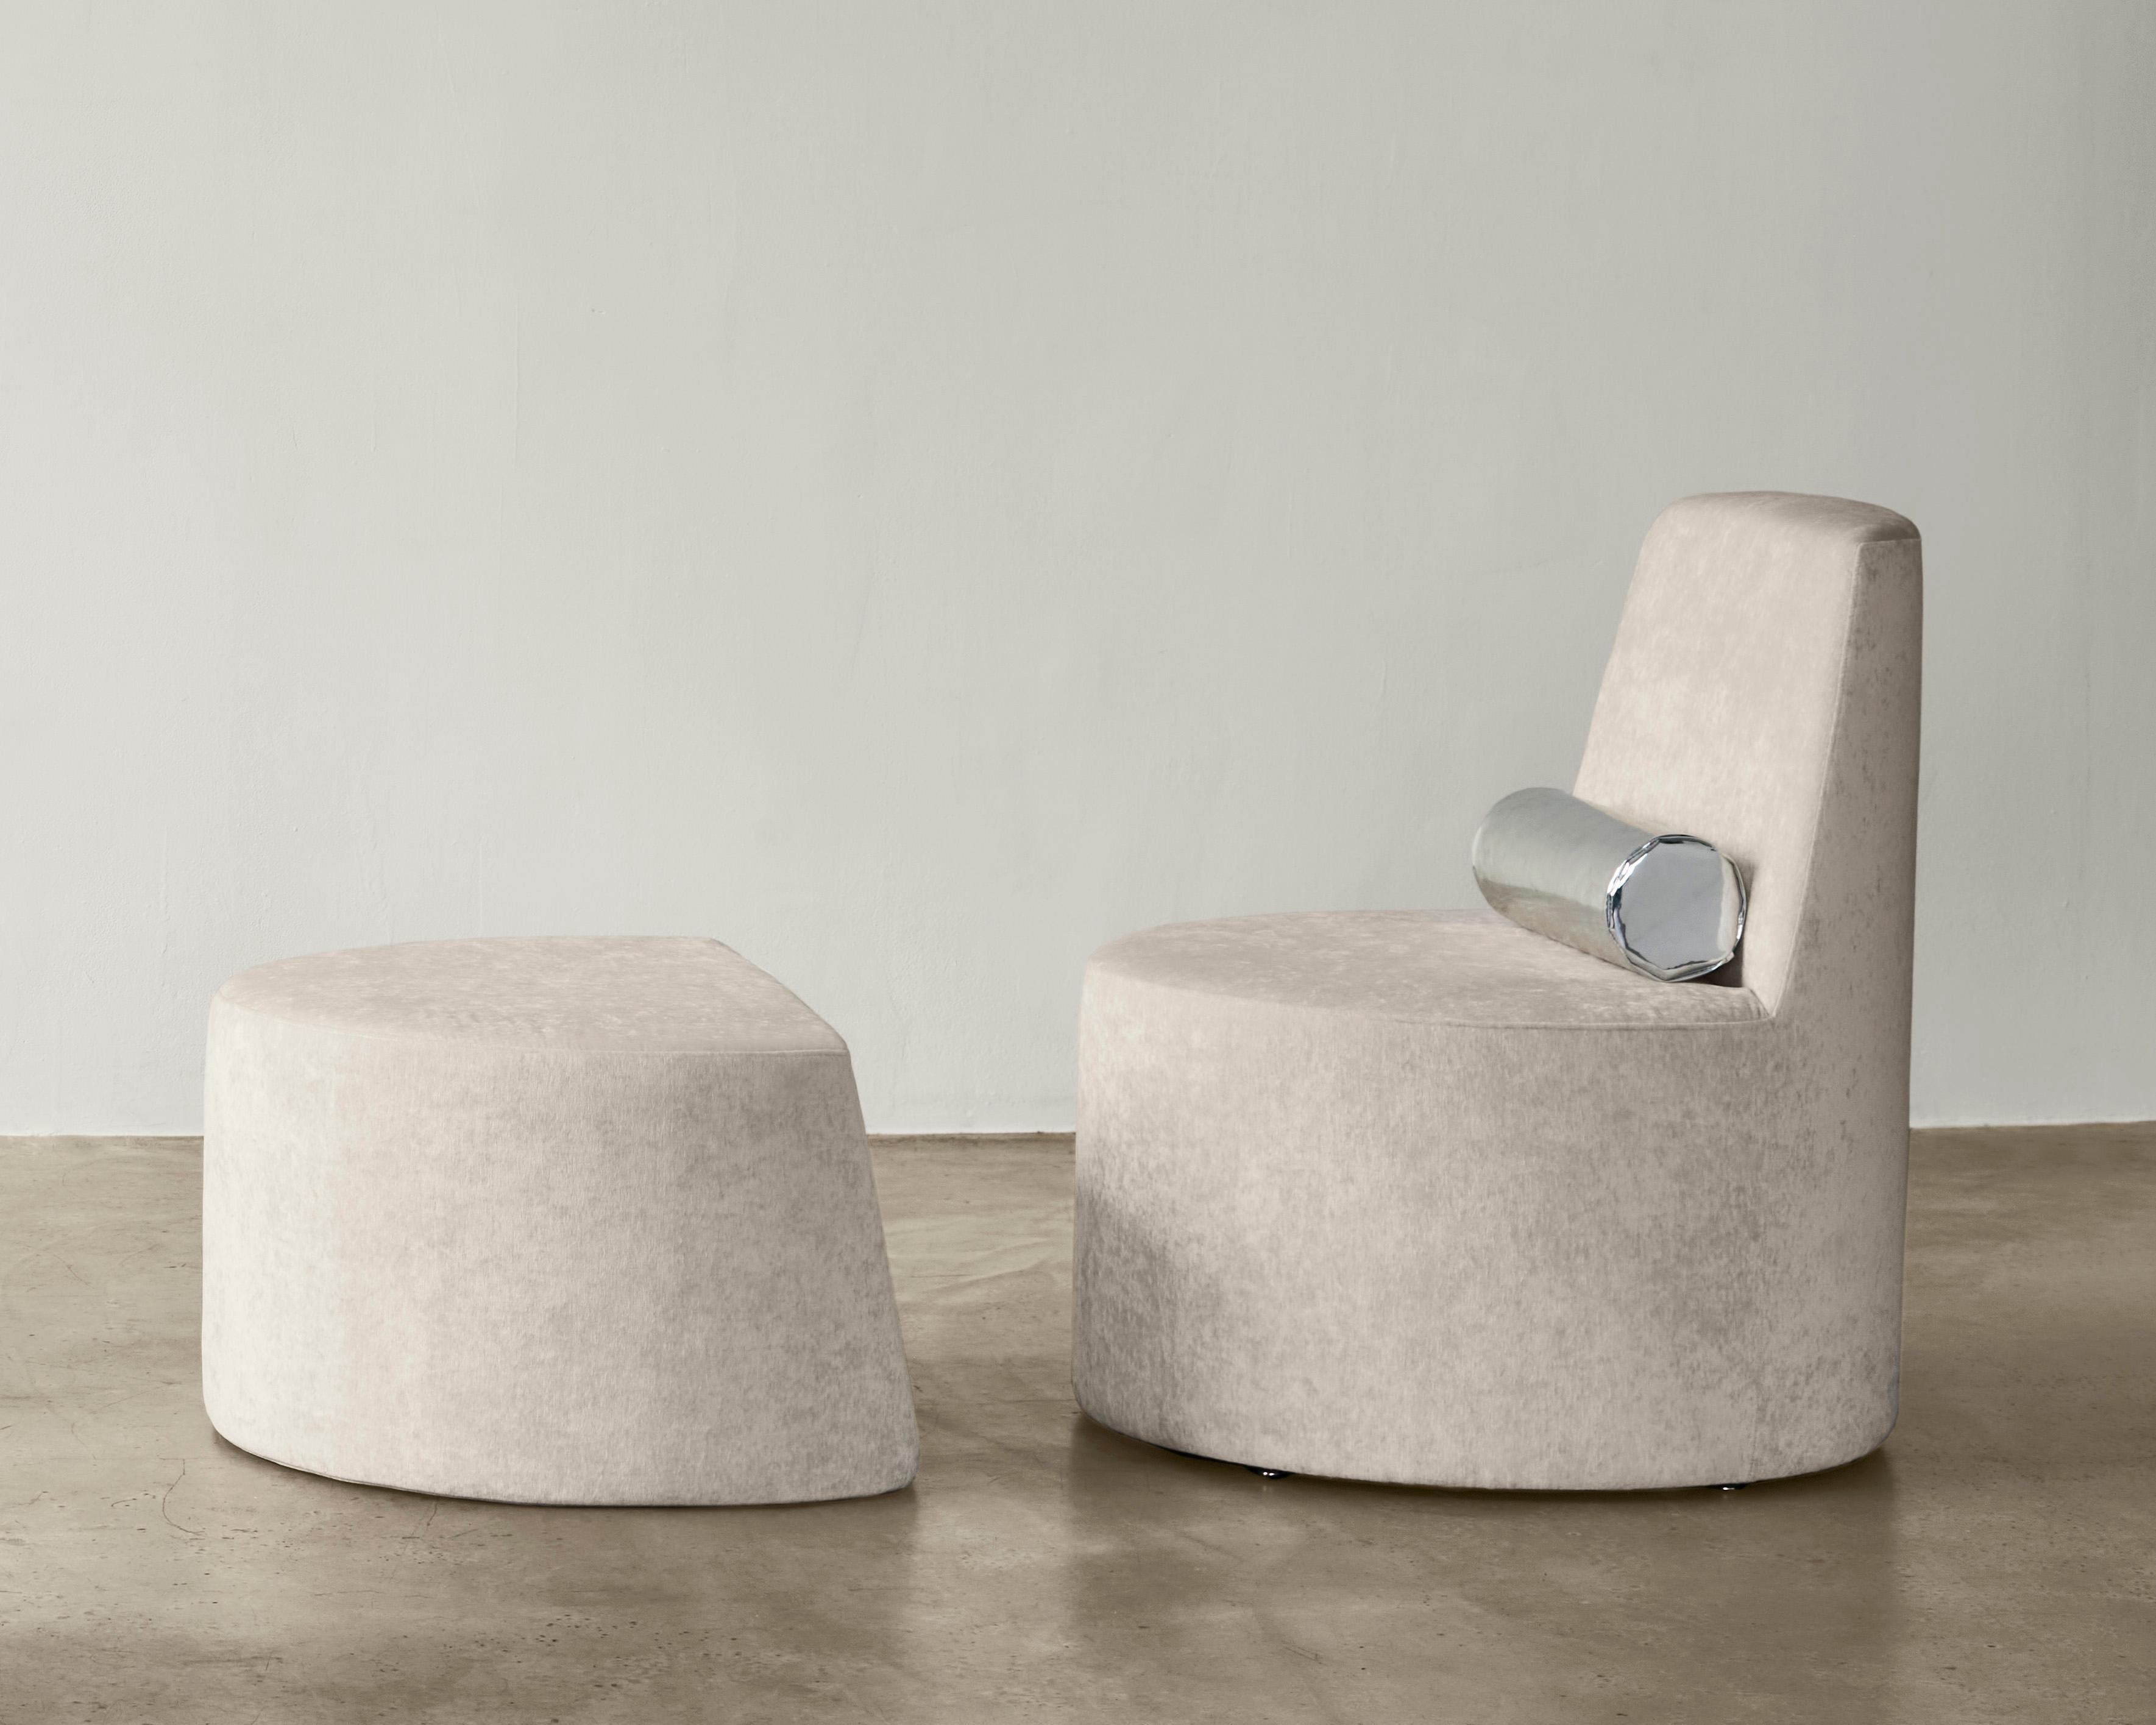 Vu dans : Sight Unseen, Interior Design Magazine, Surface Magazine

L'ensemble BLOC Cylinder Lounge Chair & Ottoman fait partie d'une collection de cinq pièces de mobilier sculptural rembourré et en matériaux mixtes. La Collection S'inspire de